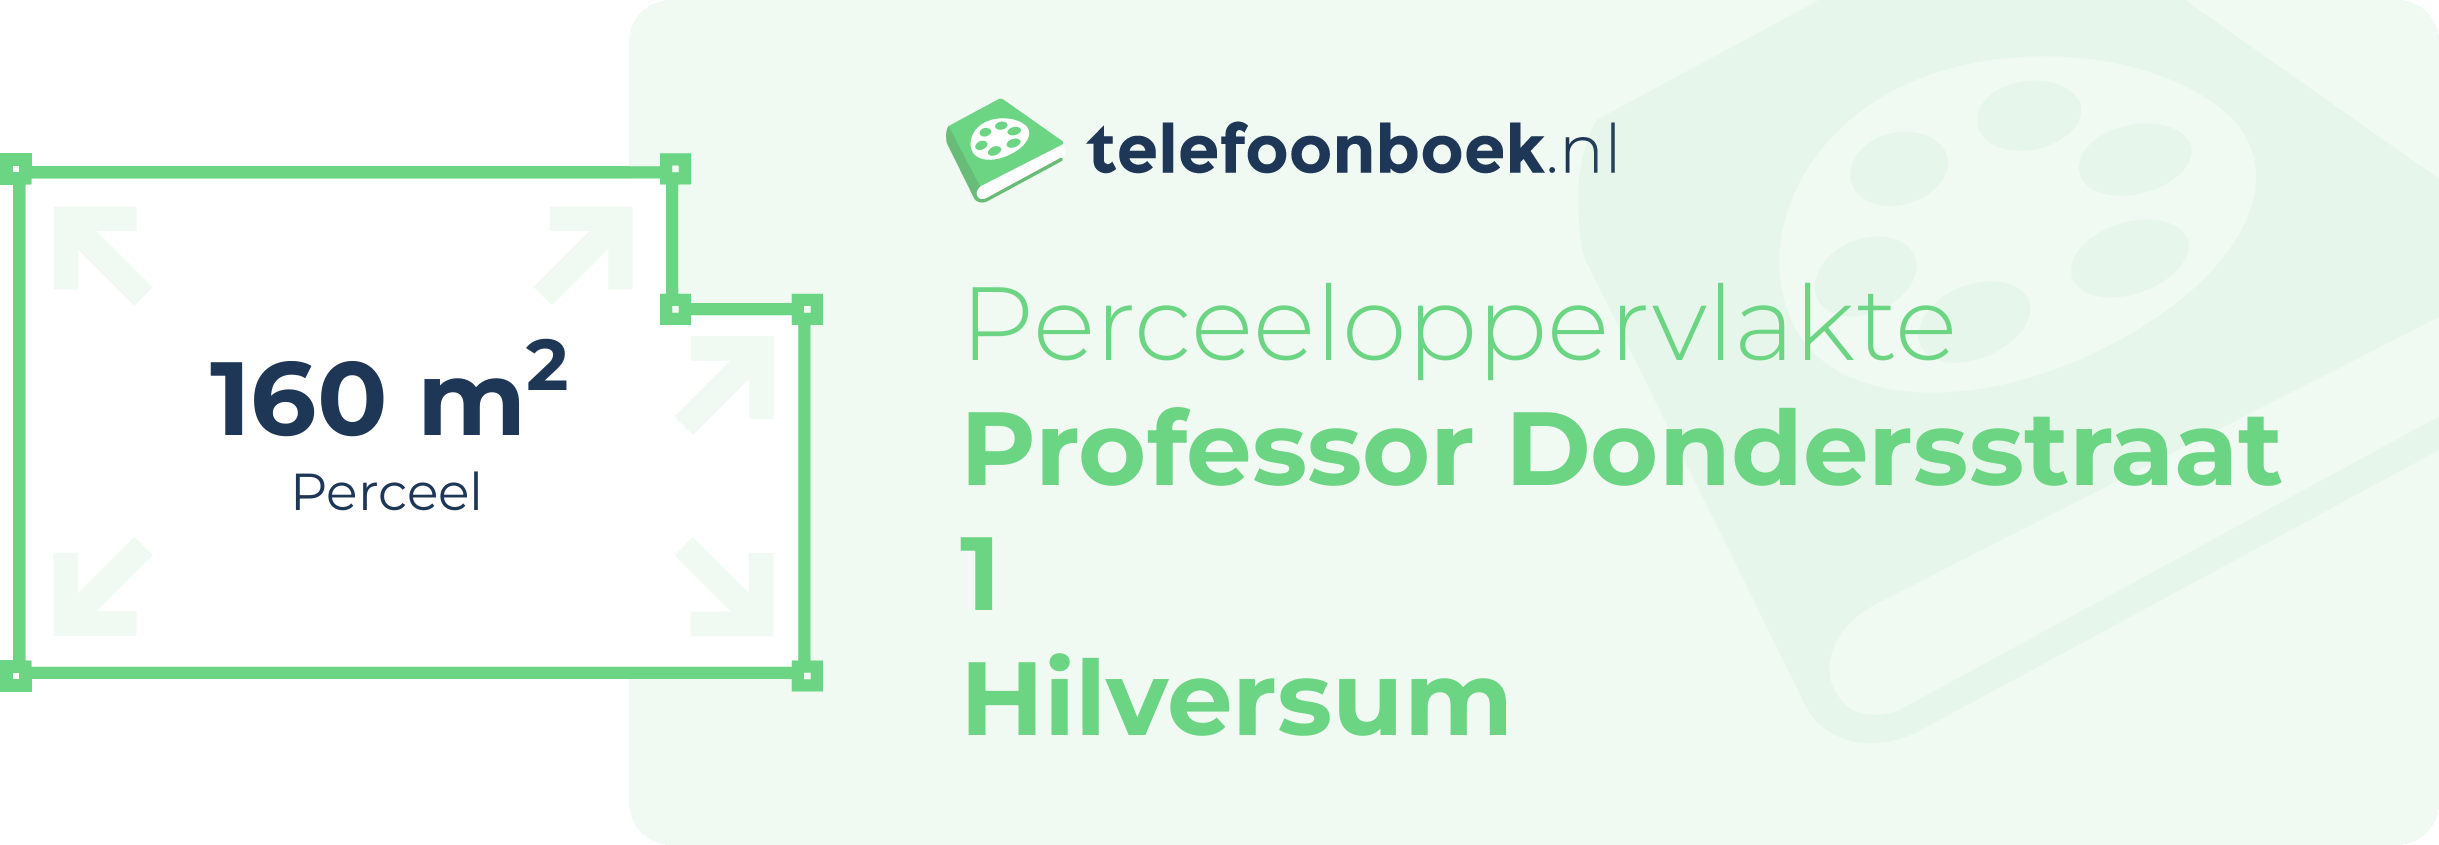 Perceeloppervlakte Professor Dondersstraat 1 Hilversum